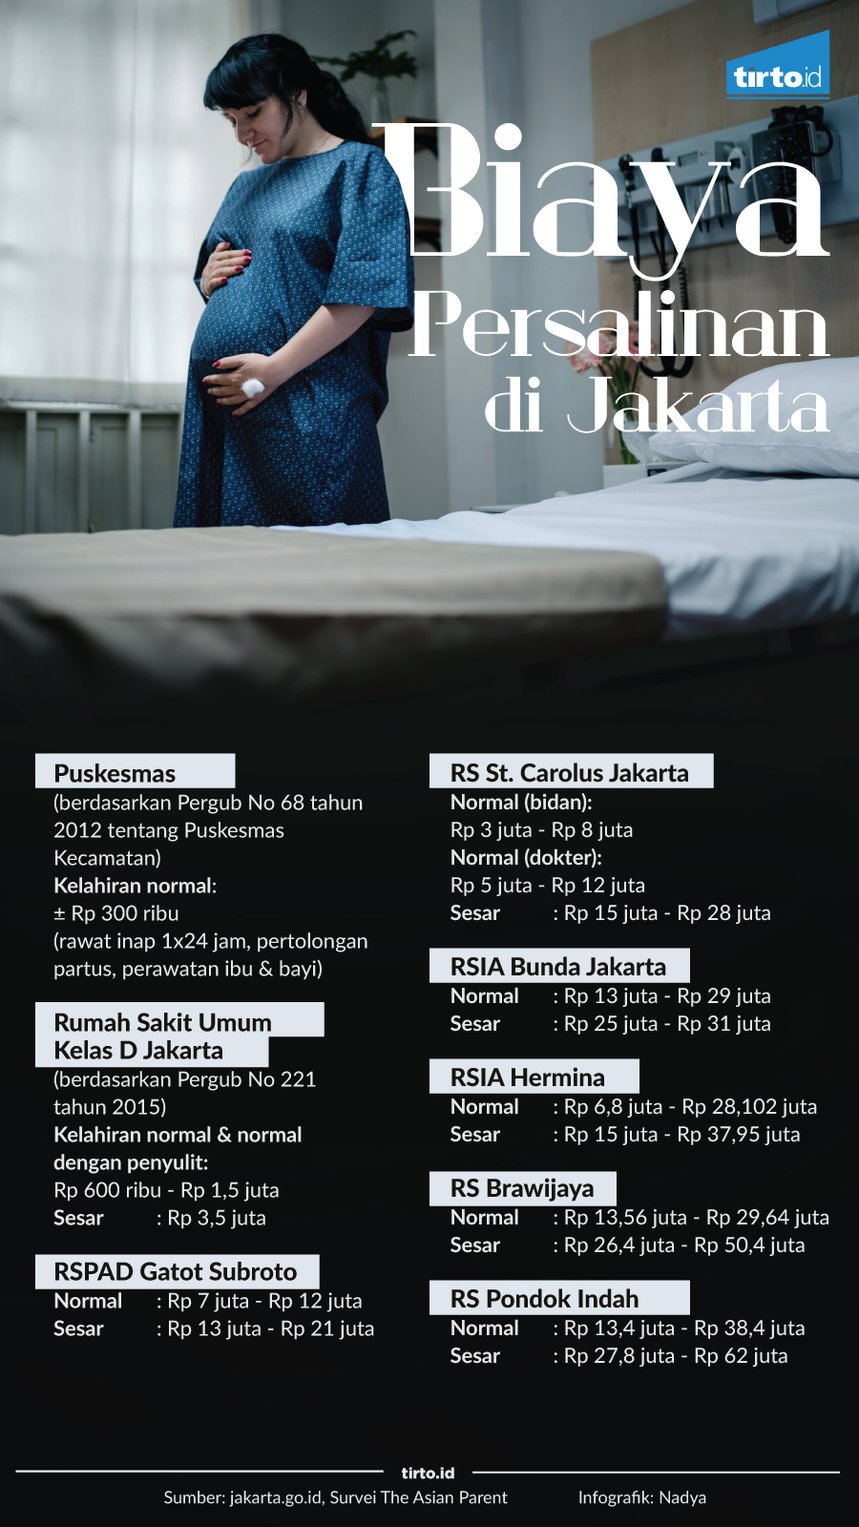 Infografik Biaya Persalinan di Jakarta